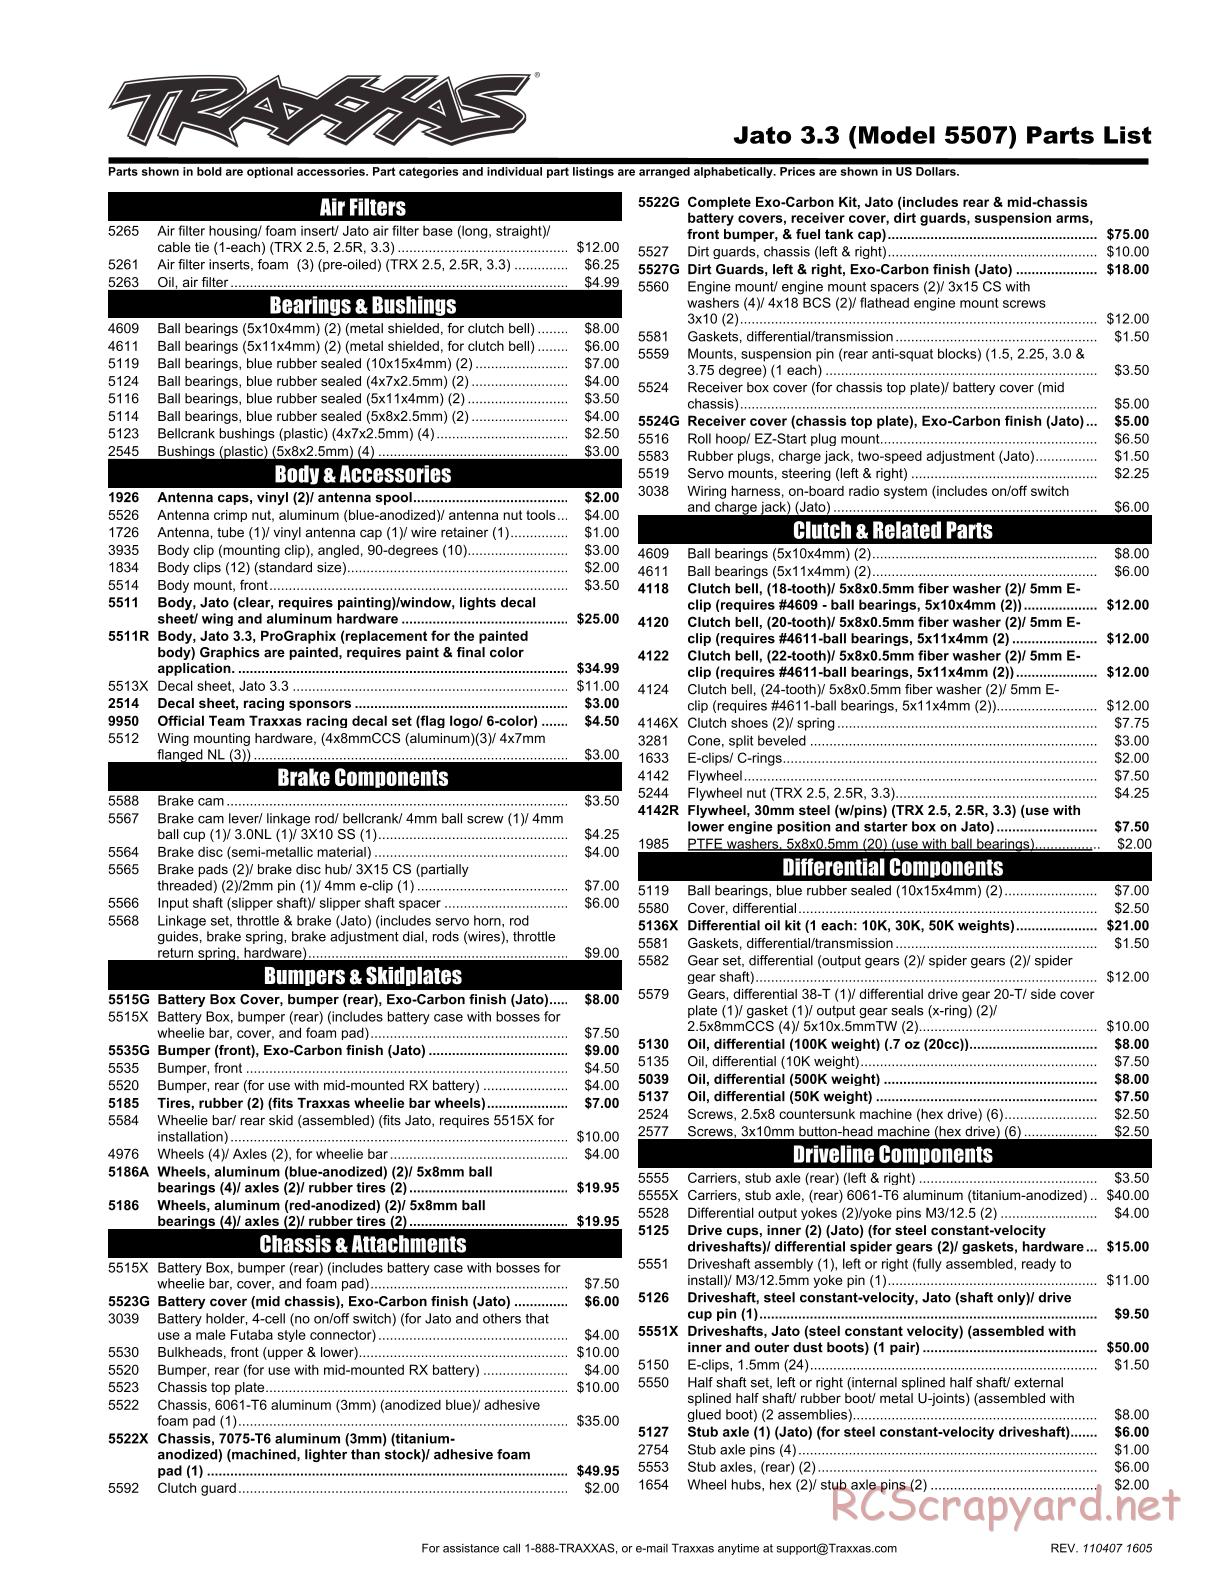 Traxxas - Jato 3.3 (2010) - Parts List - Page 1